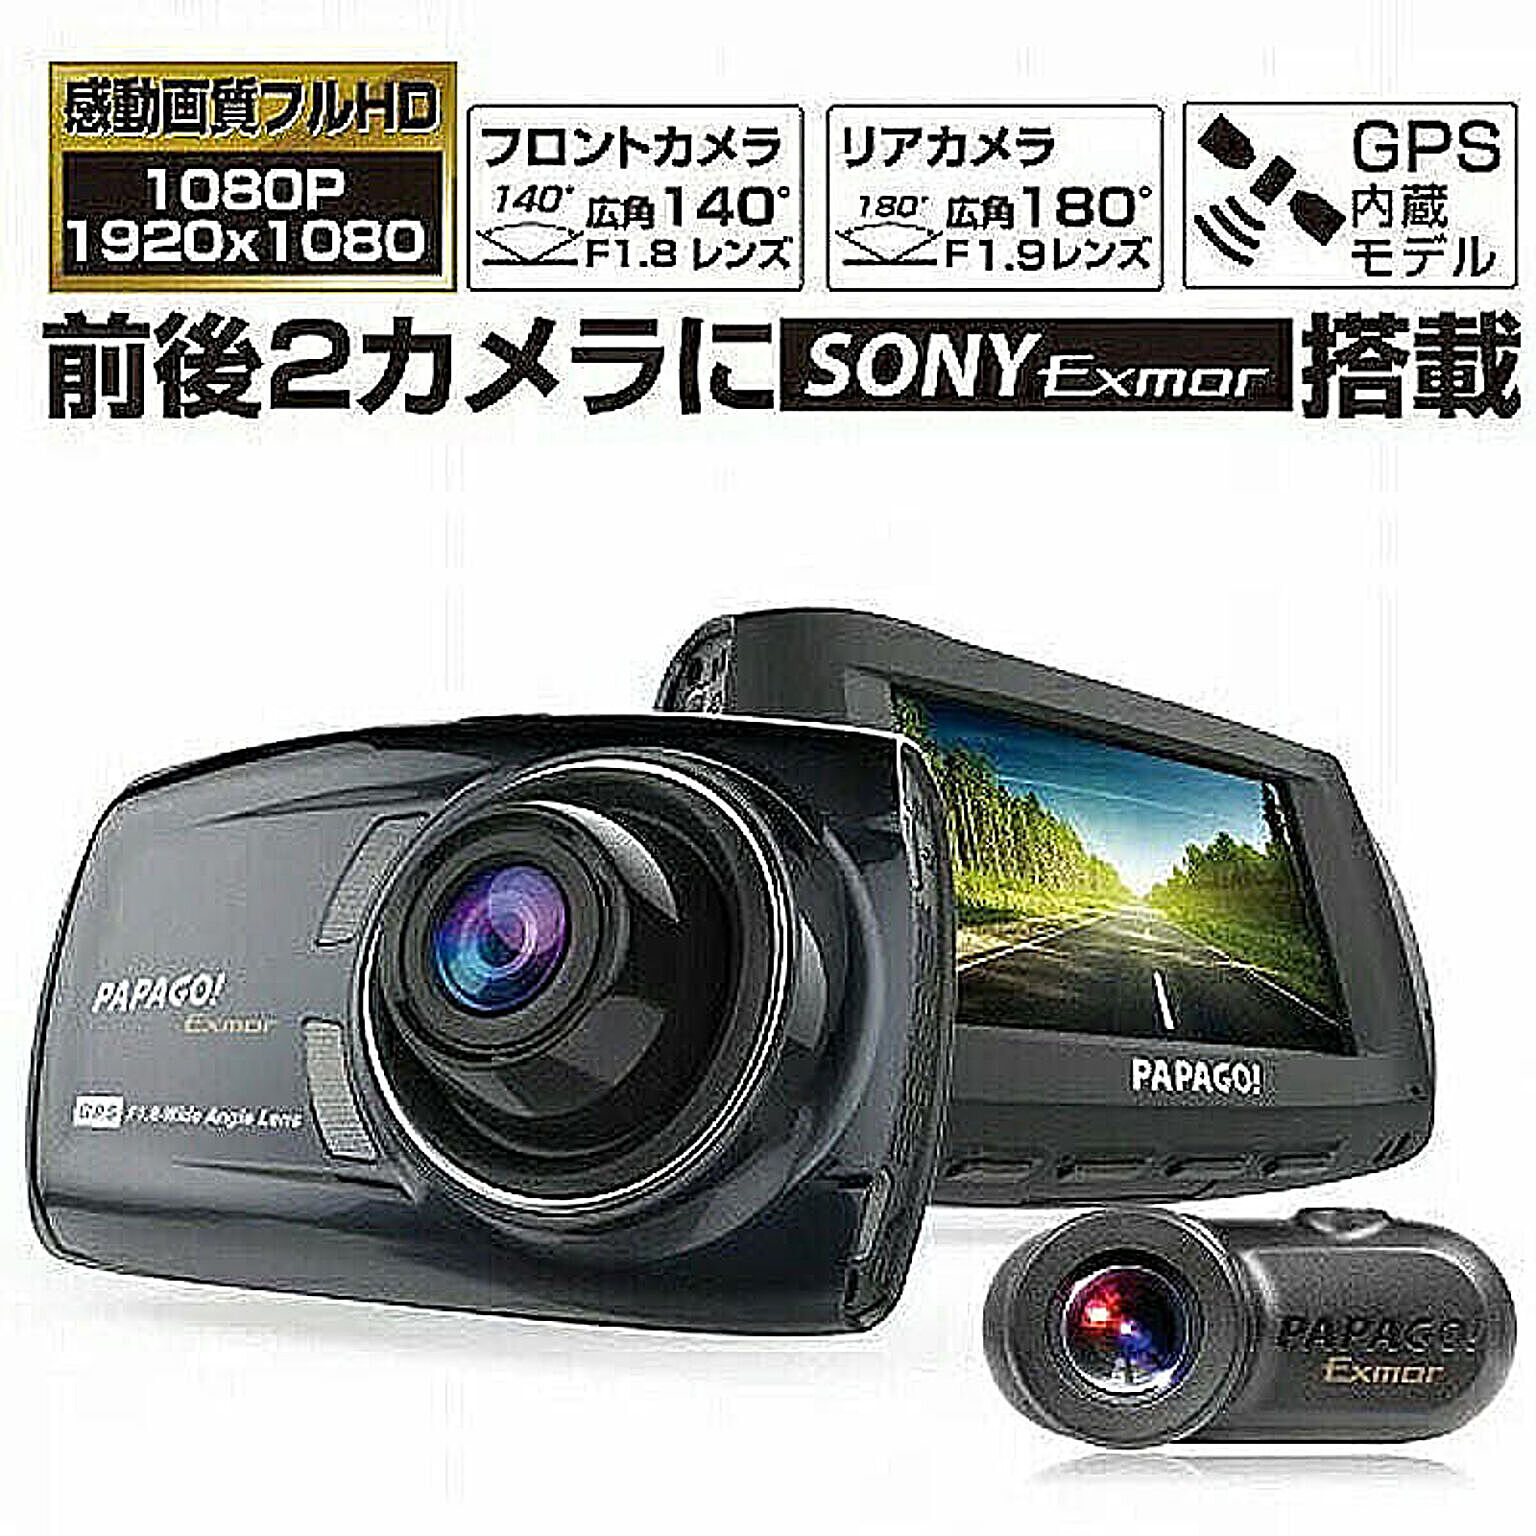 ドライブレコーダー 前後 一体 2カメラ SONY Exmor センサー搭載 ドラレコ GoSafe S36GS1 GSS 管理No. 4582448451041